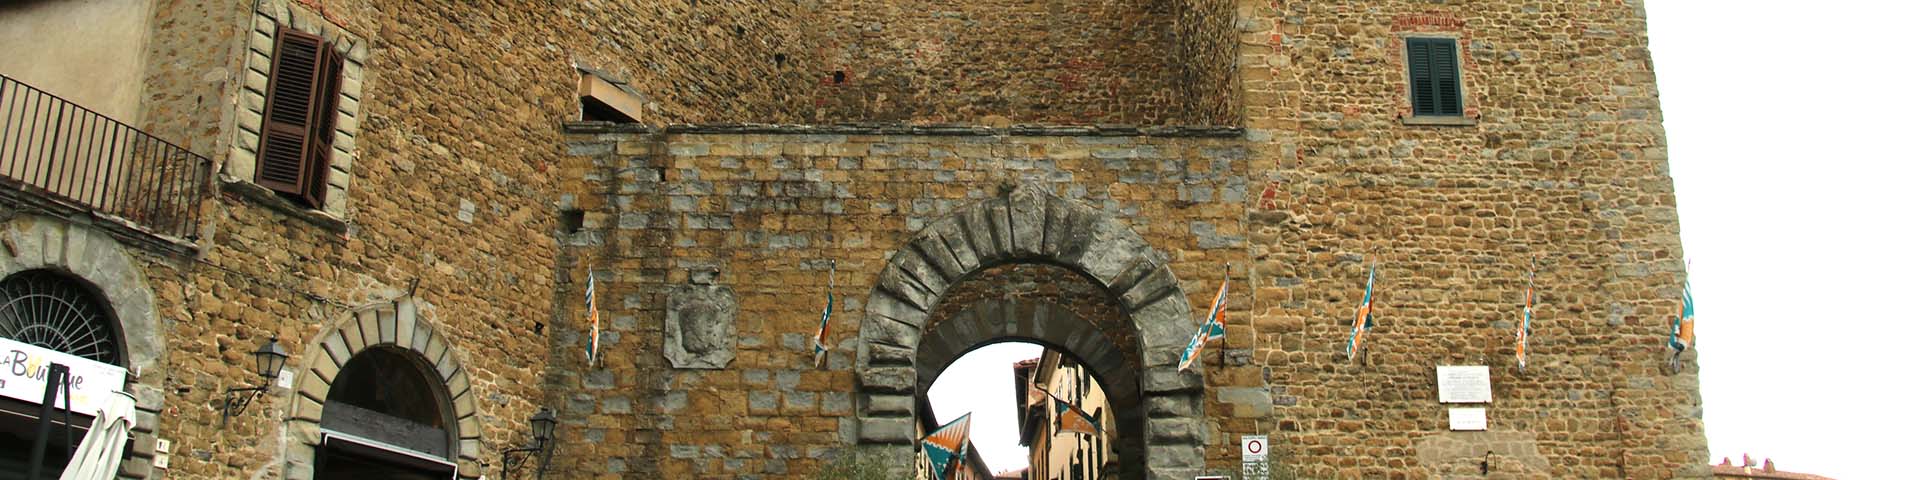 Porta Fiorentina, Castiglion Fiorentino